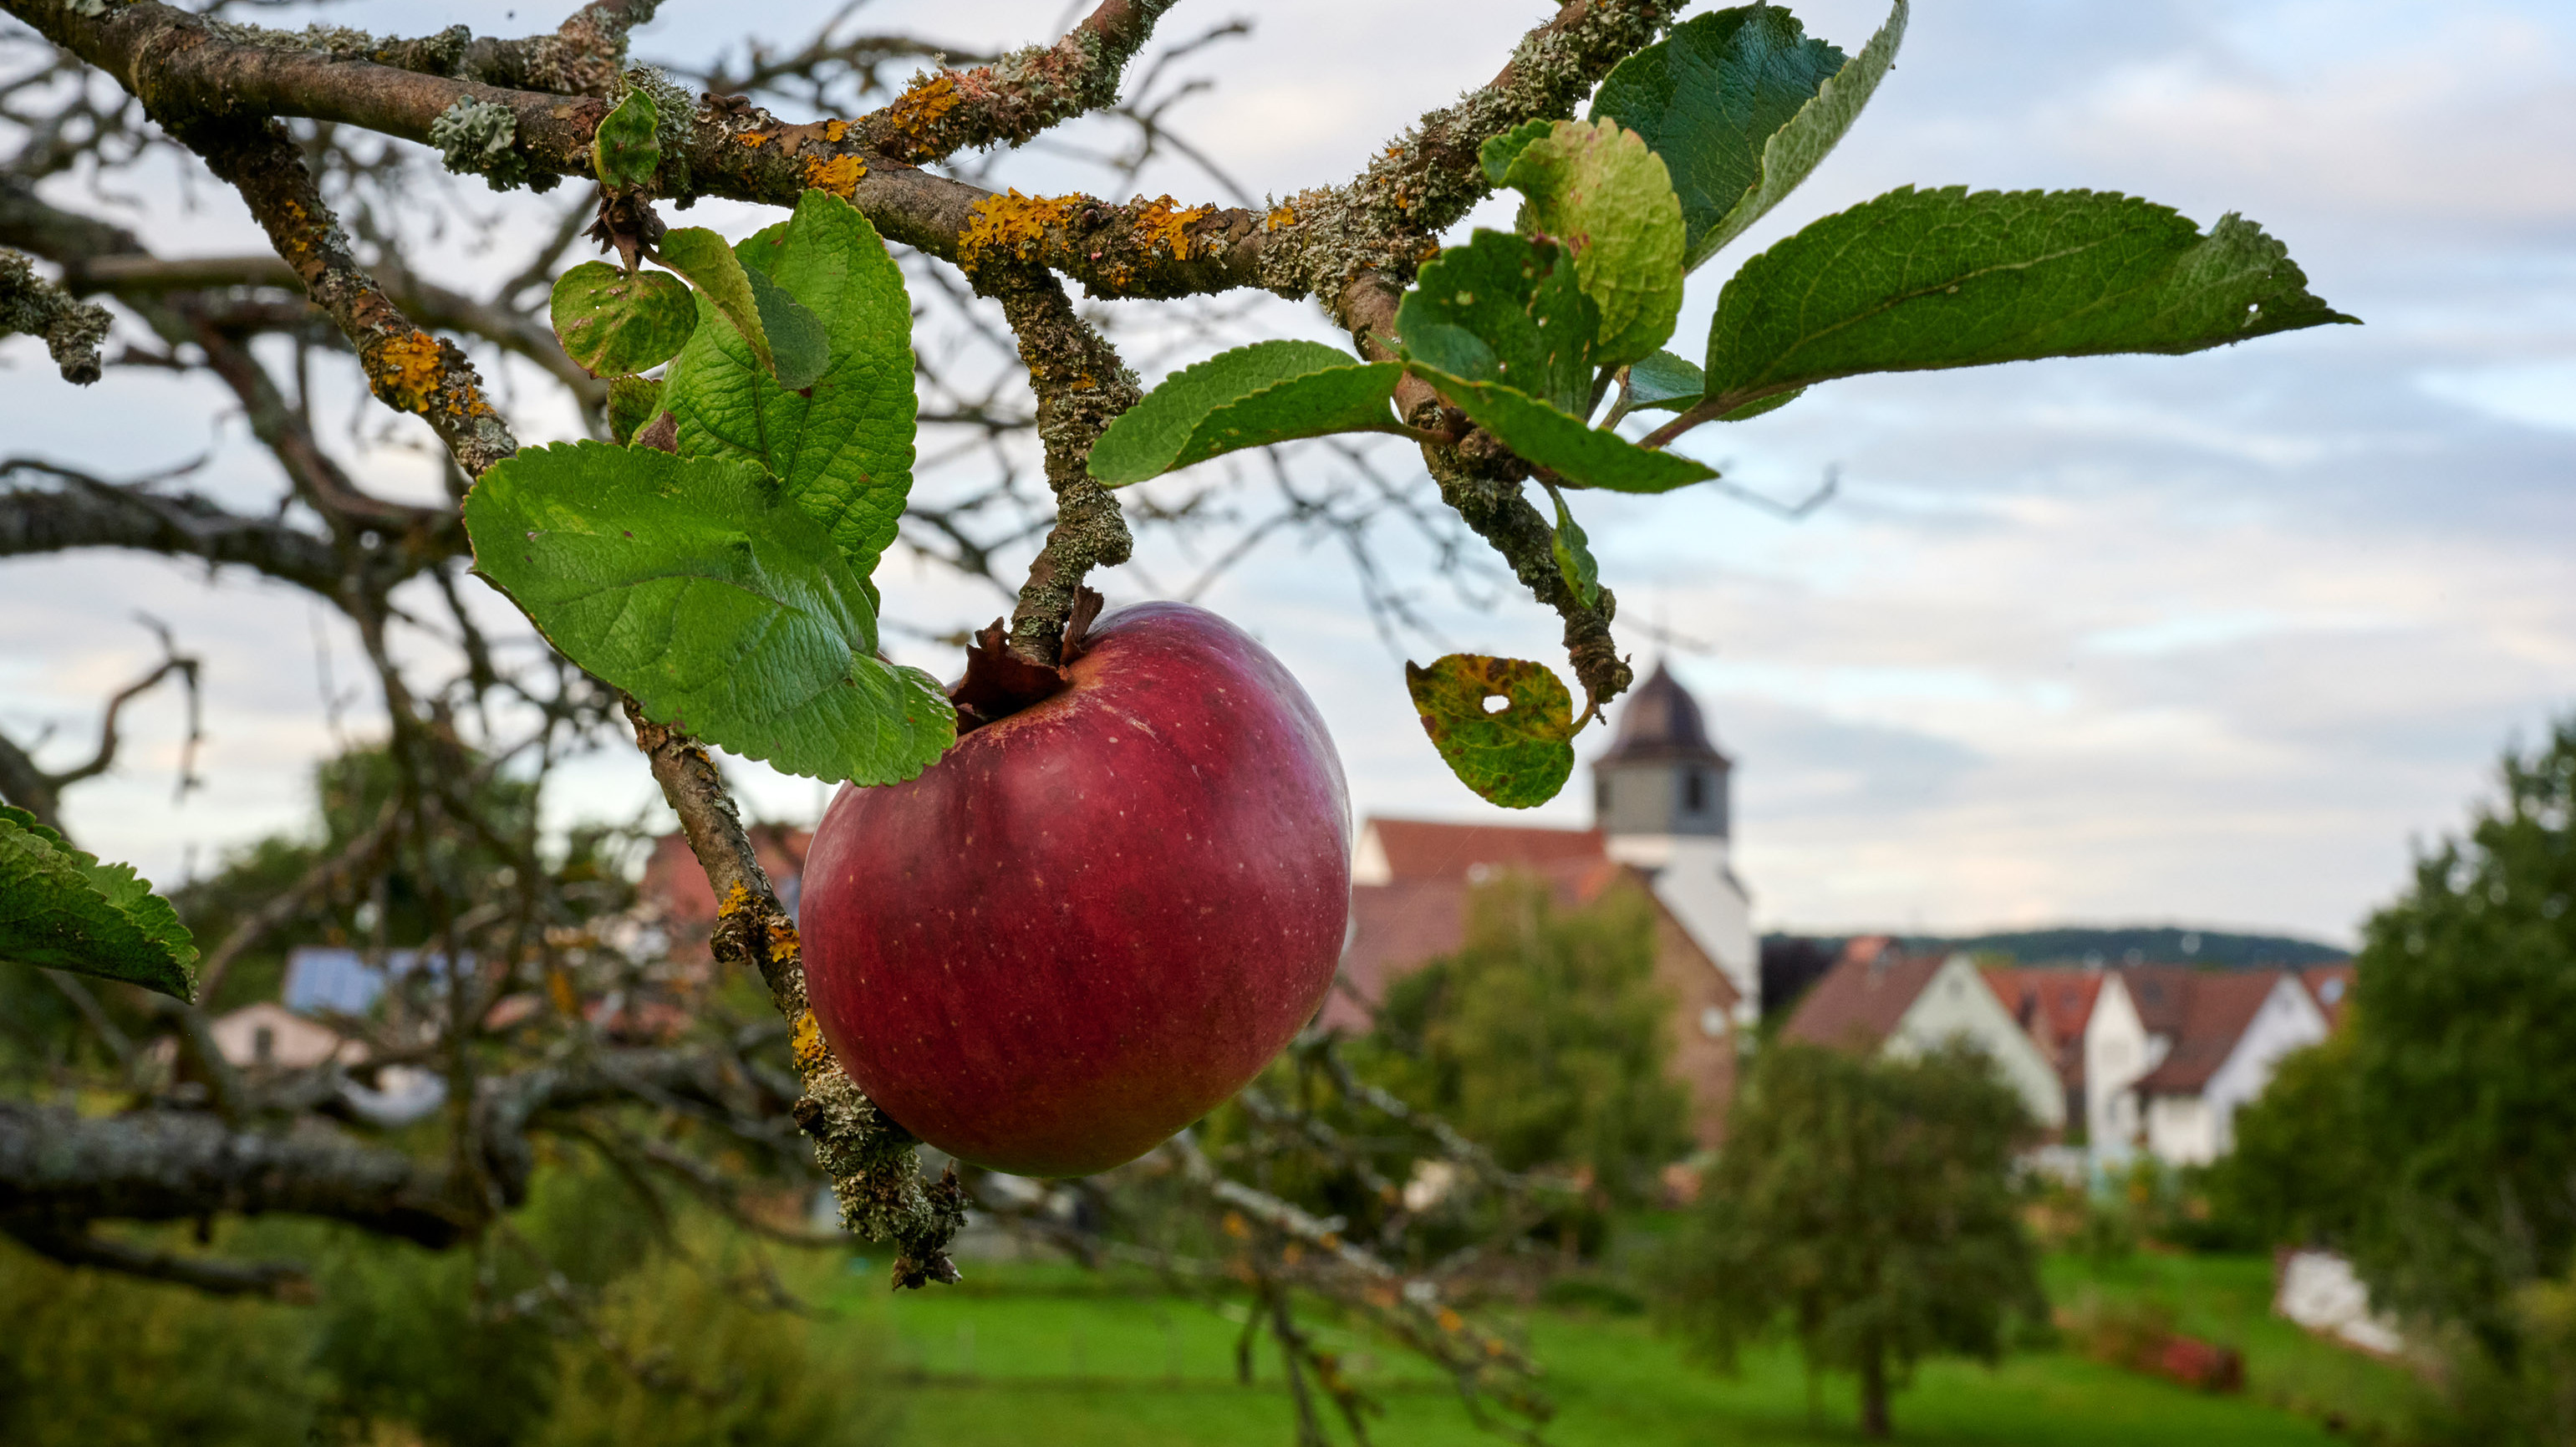 Nahaufnahme eines Apfels am Baum im Hintergrund historischer Ortskern Zaisersweiher